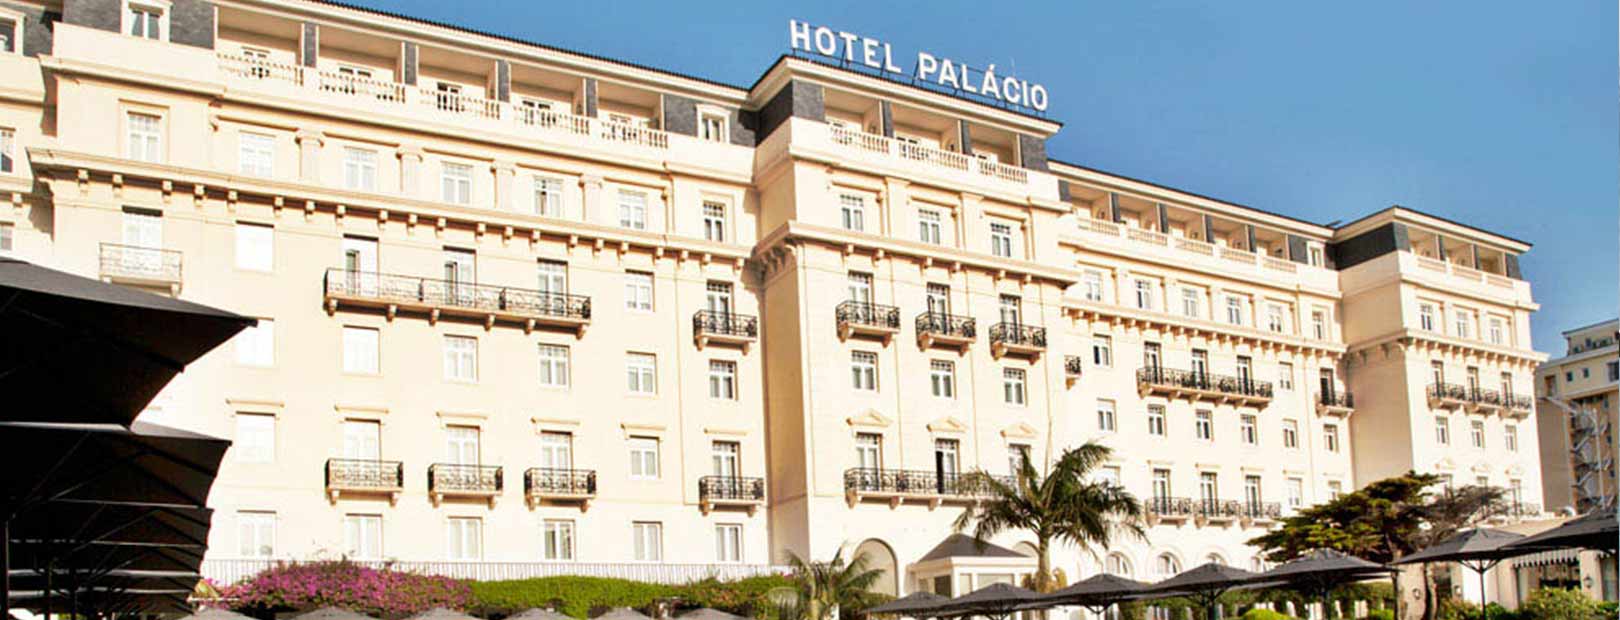 Hotel Palacio do Estoril